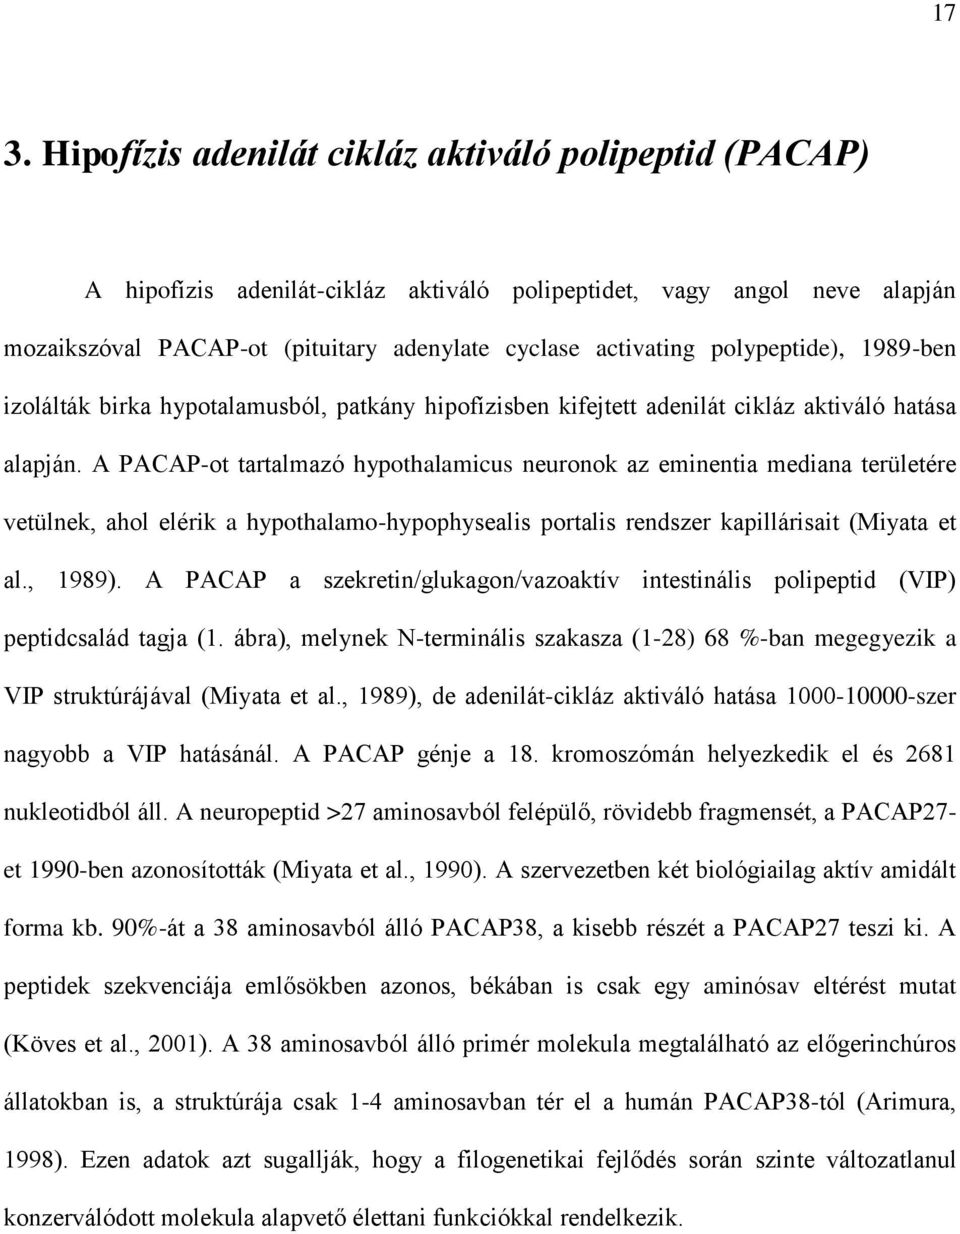 A PACAP-ot tartalmazó hypothalamicus neuronok az eminentia mediana területére vetülnek, ahol elérik a hypothalamo-hypophysealis portalis rendszer kapillárisait (Miyata et al., 1989).